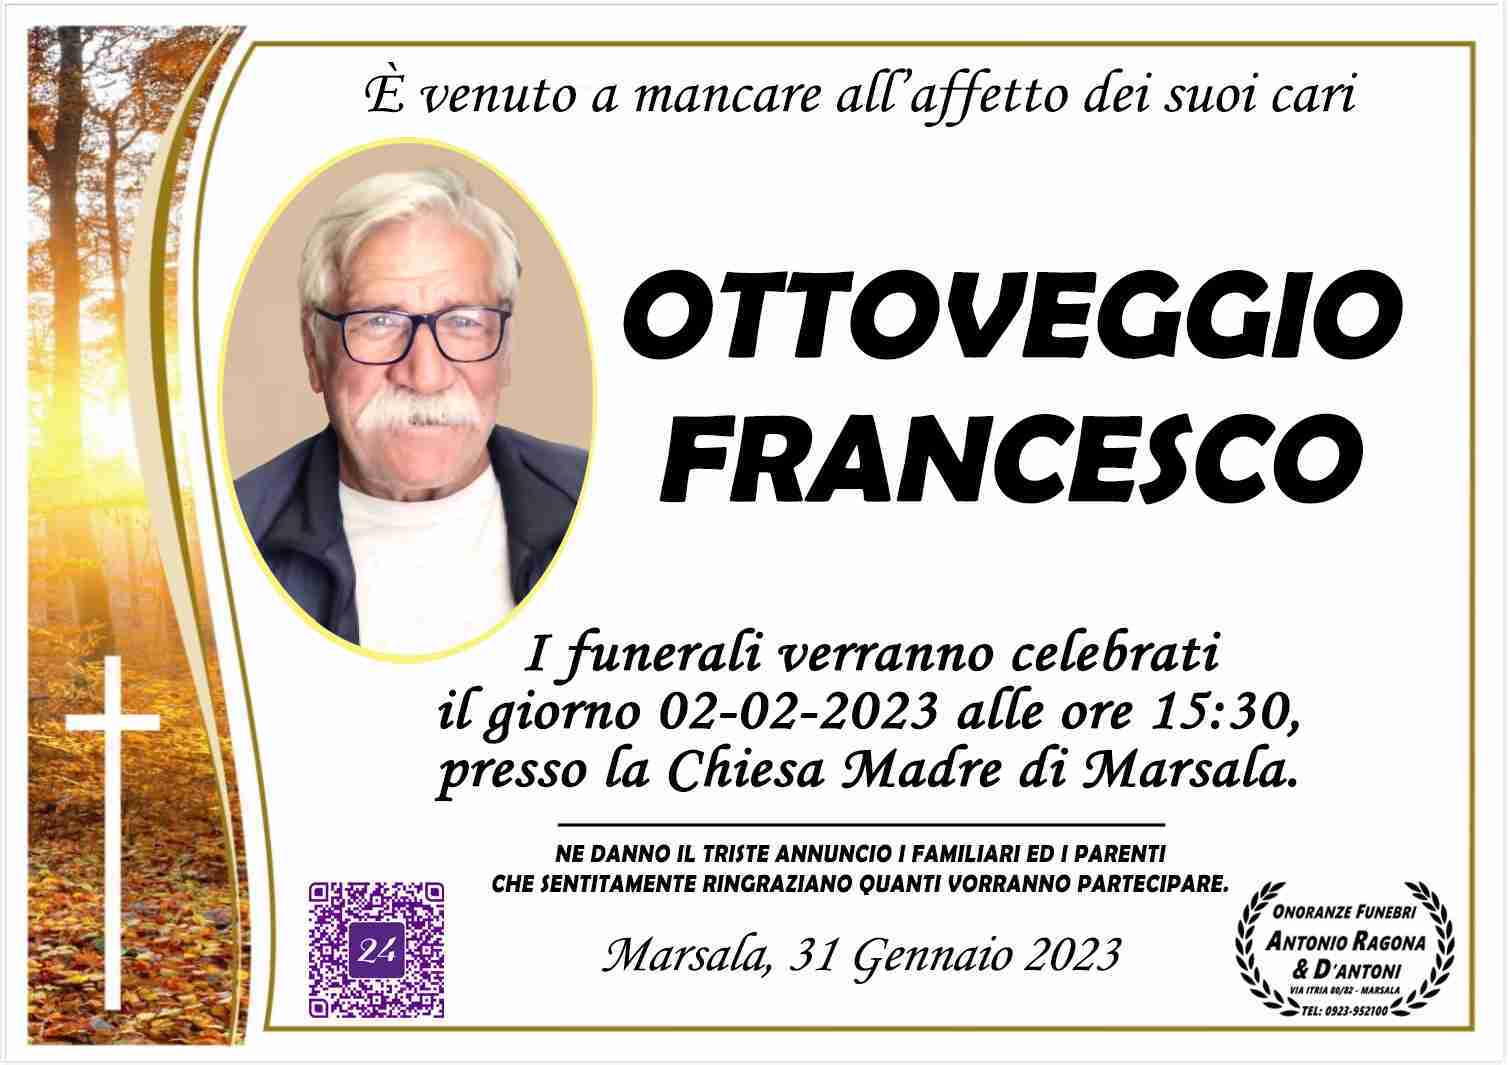 Francesco Ottoveggio